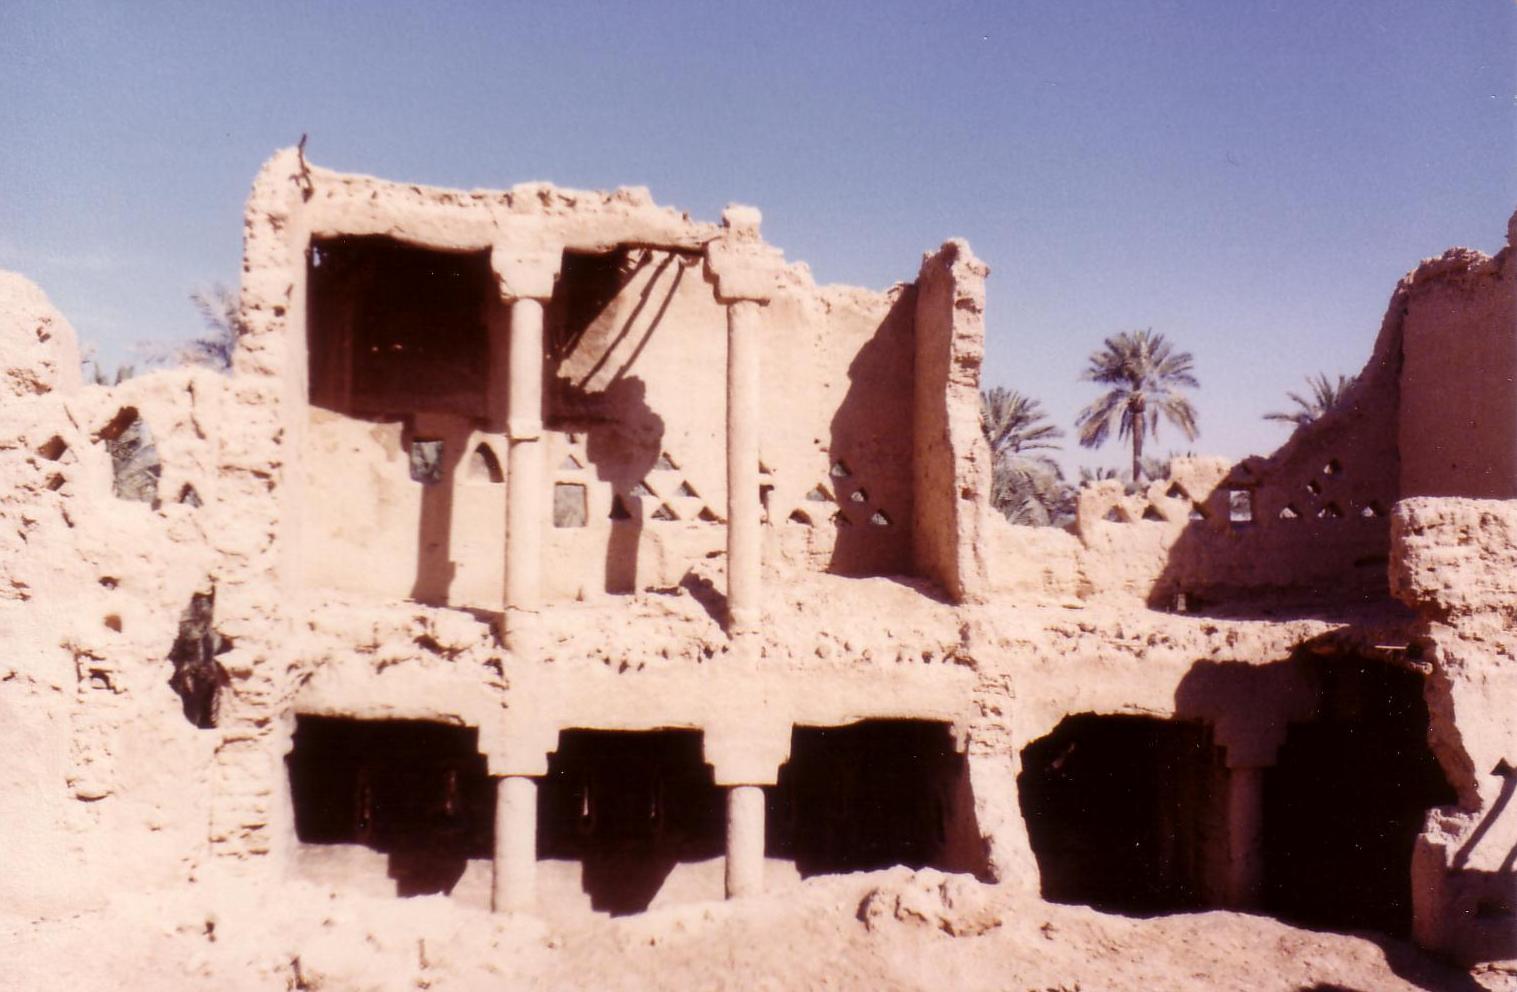 Ruined house in Al Diriyah